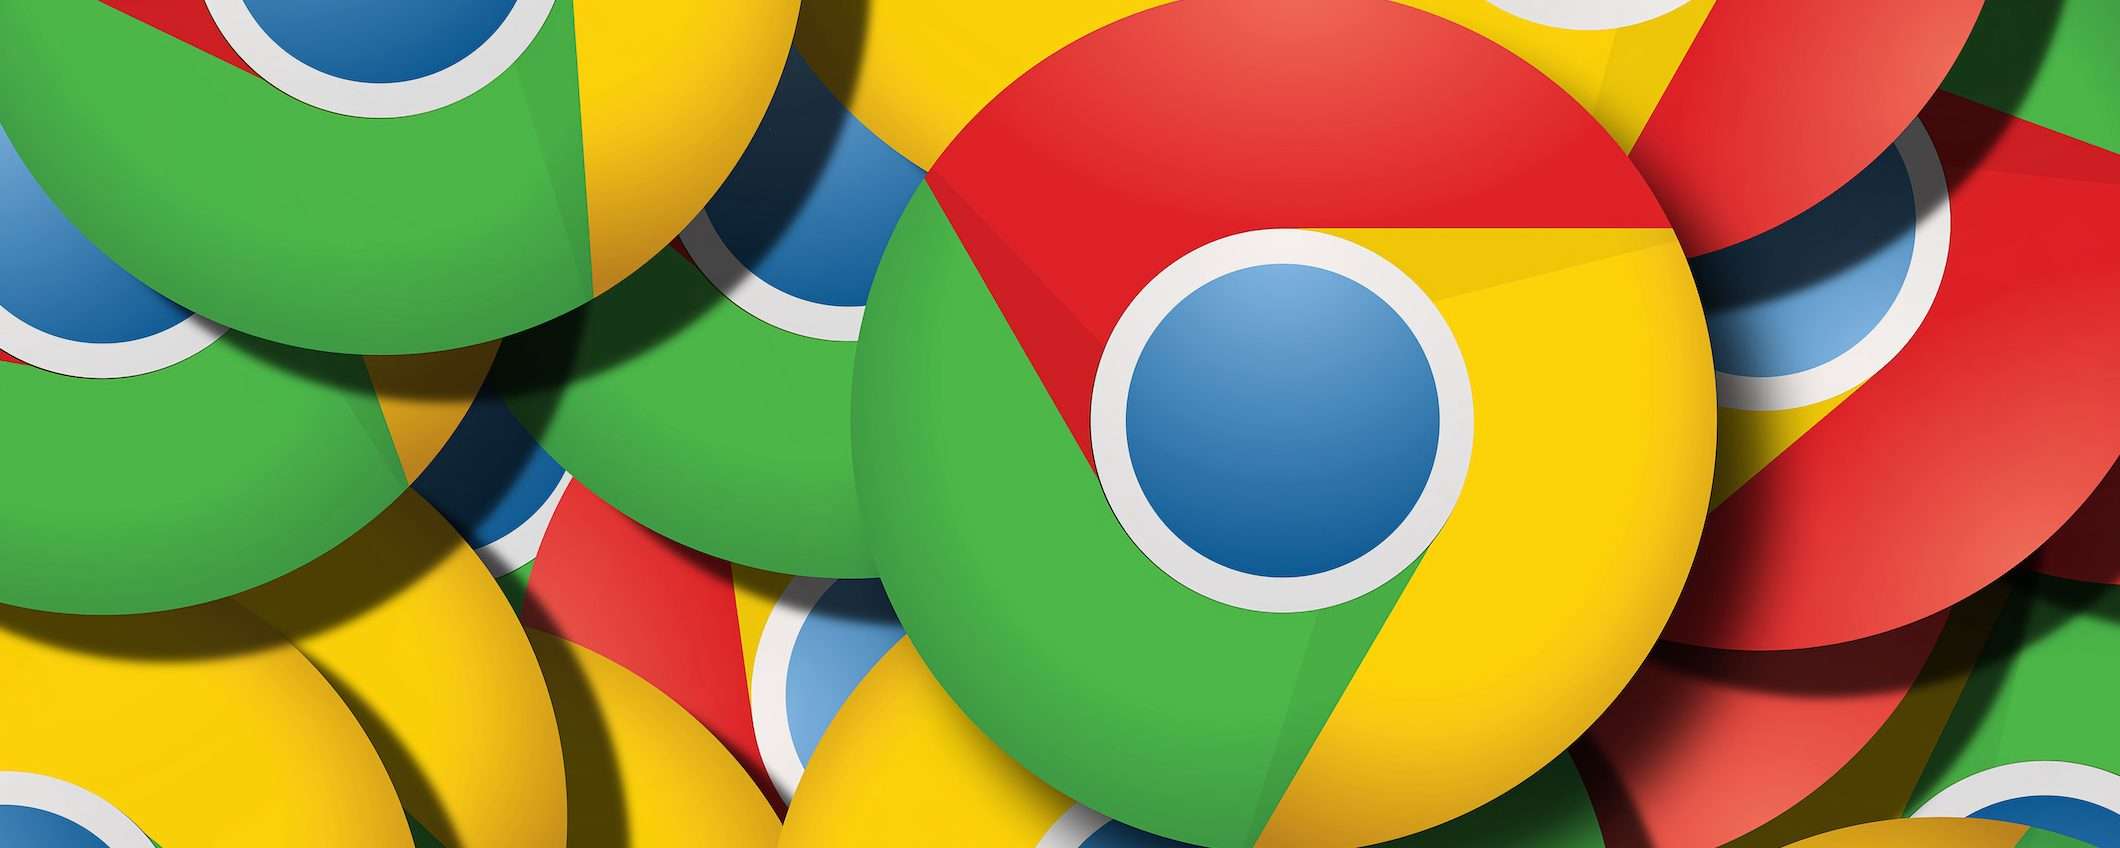 Estensioni di Chrome usate per tracciare l'utente